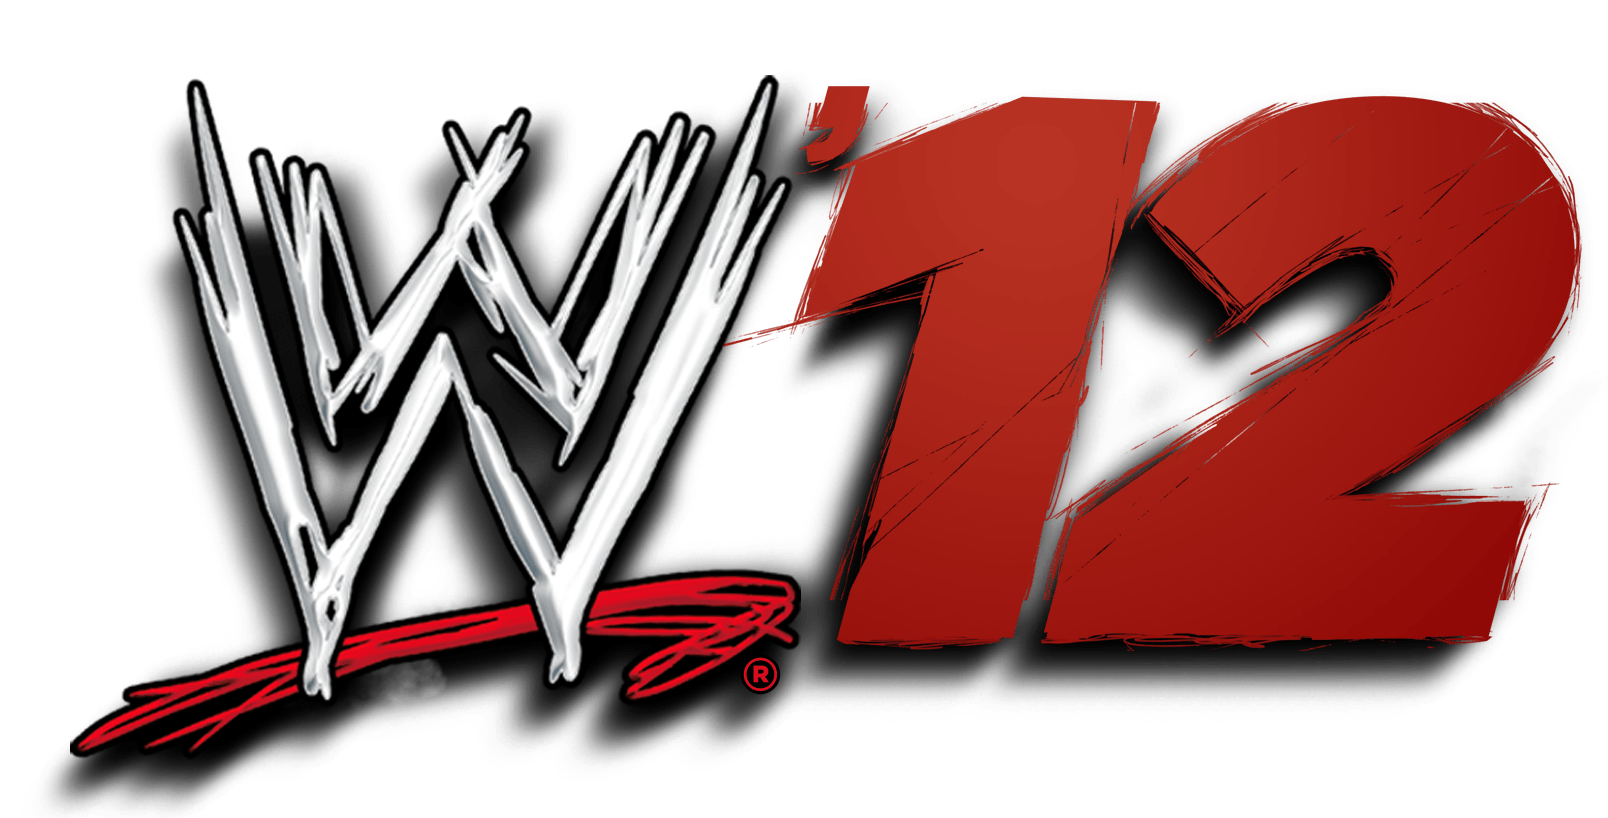 12 Logo - Image - WWE 12 logo.png | PSN Platinum Wiki | FANDOM powered by Wikia